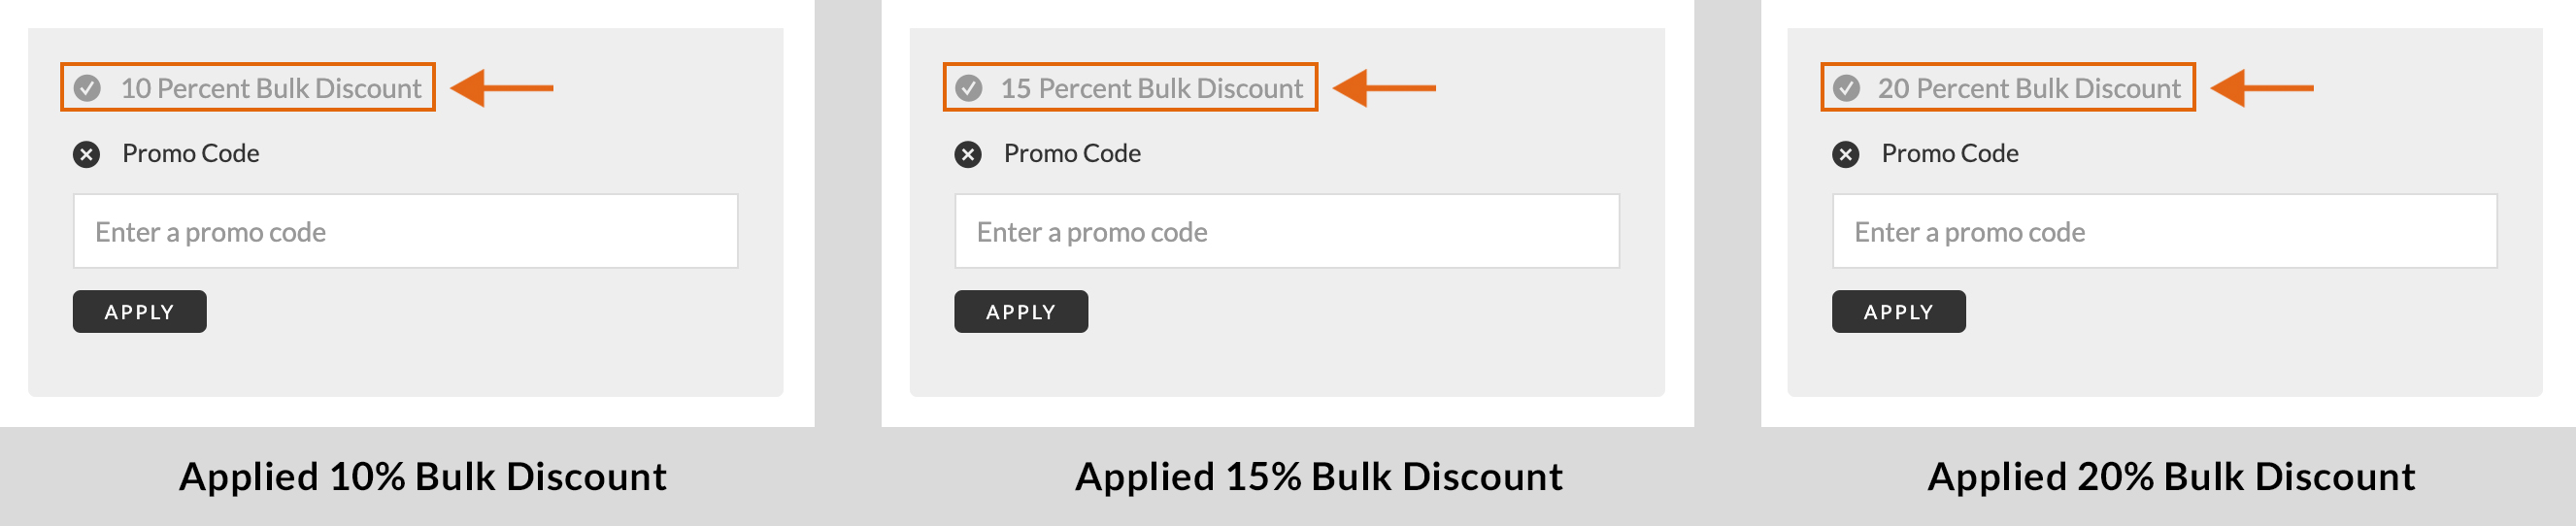 Bulk_Discounts_1.jpg